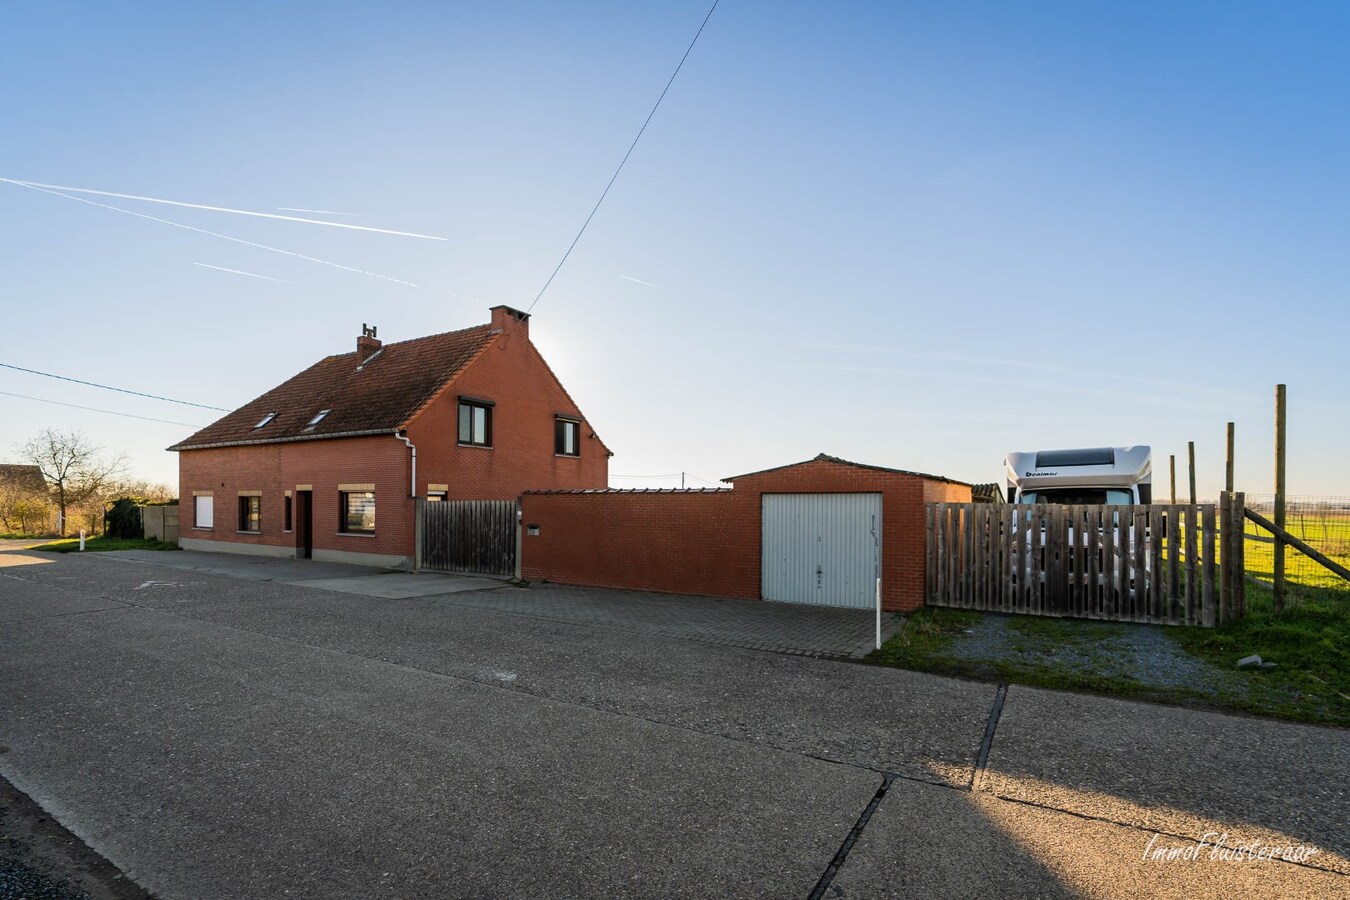 Property sold | under restrictions in Herk-de-Stad